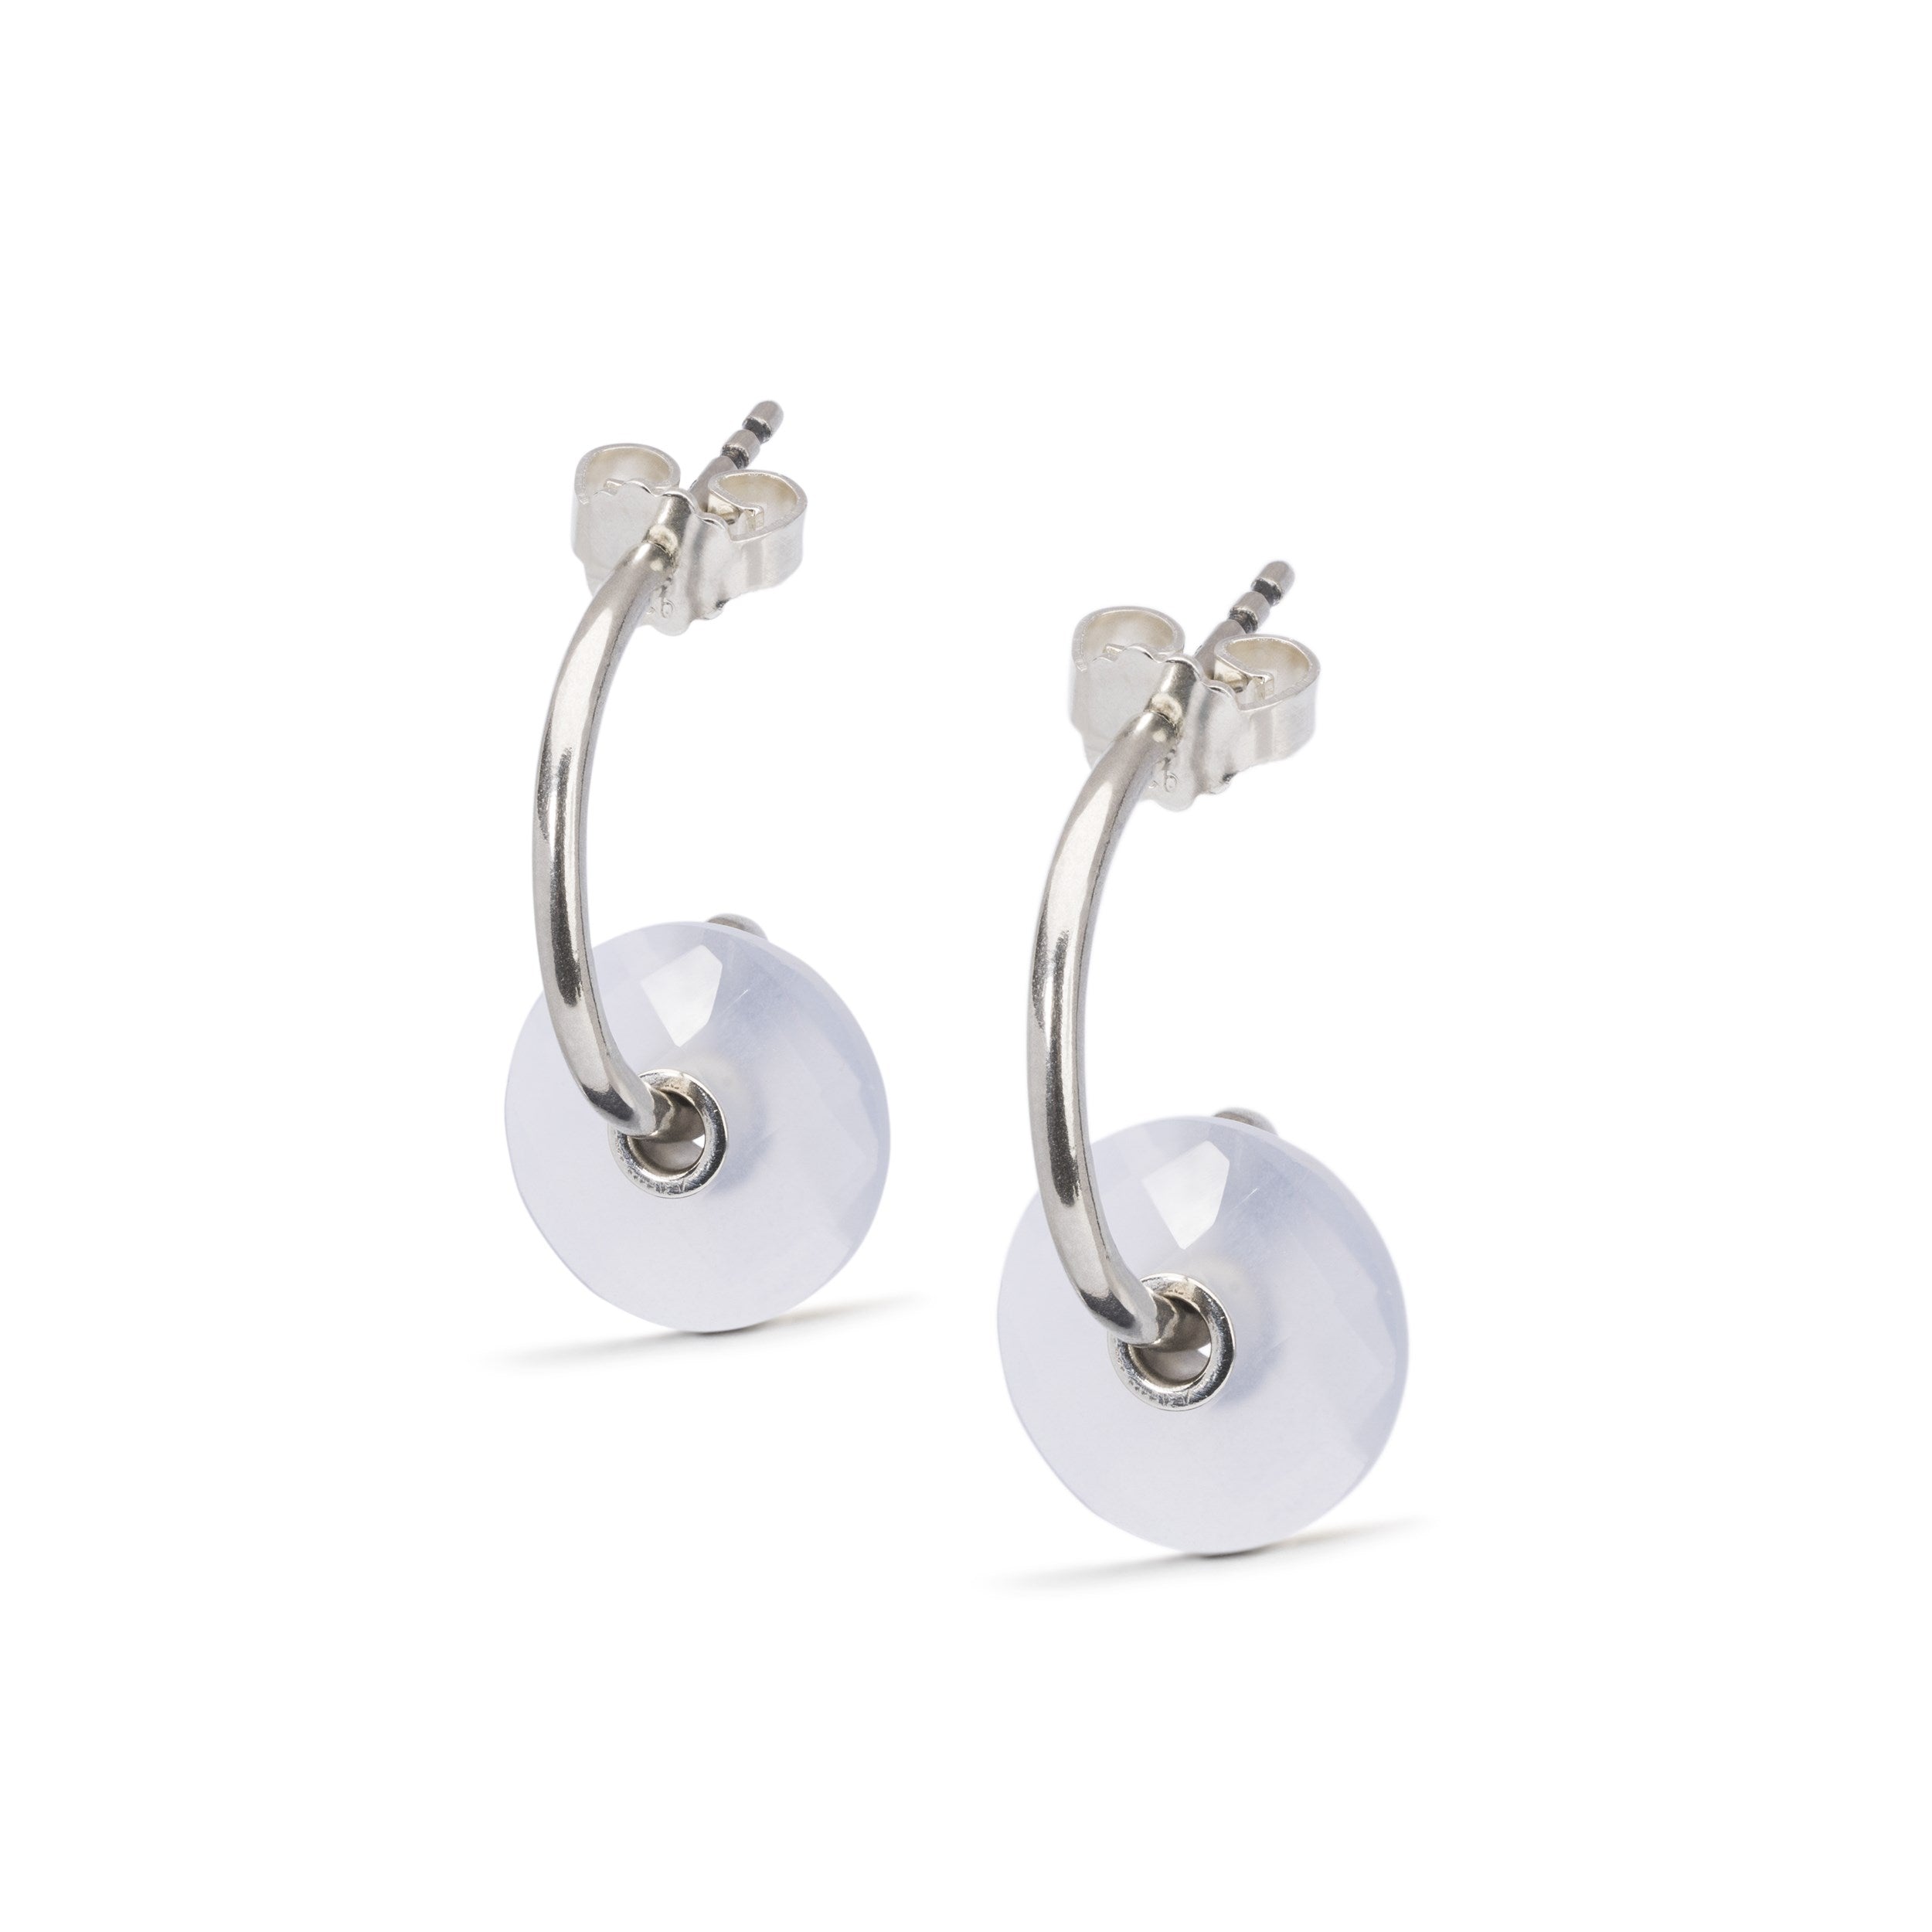 Earring Hooks with Twirl